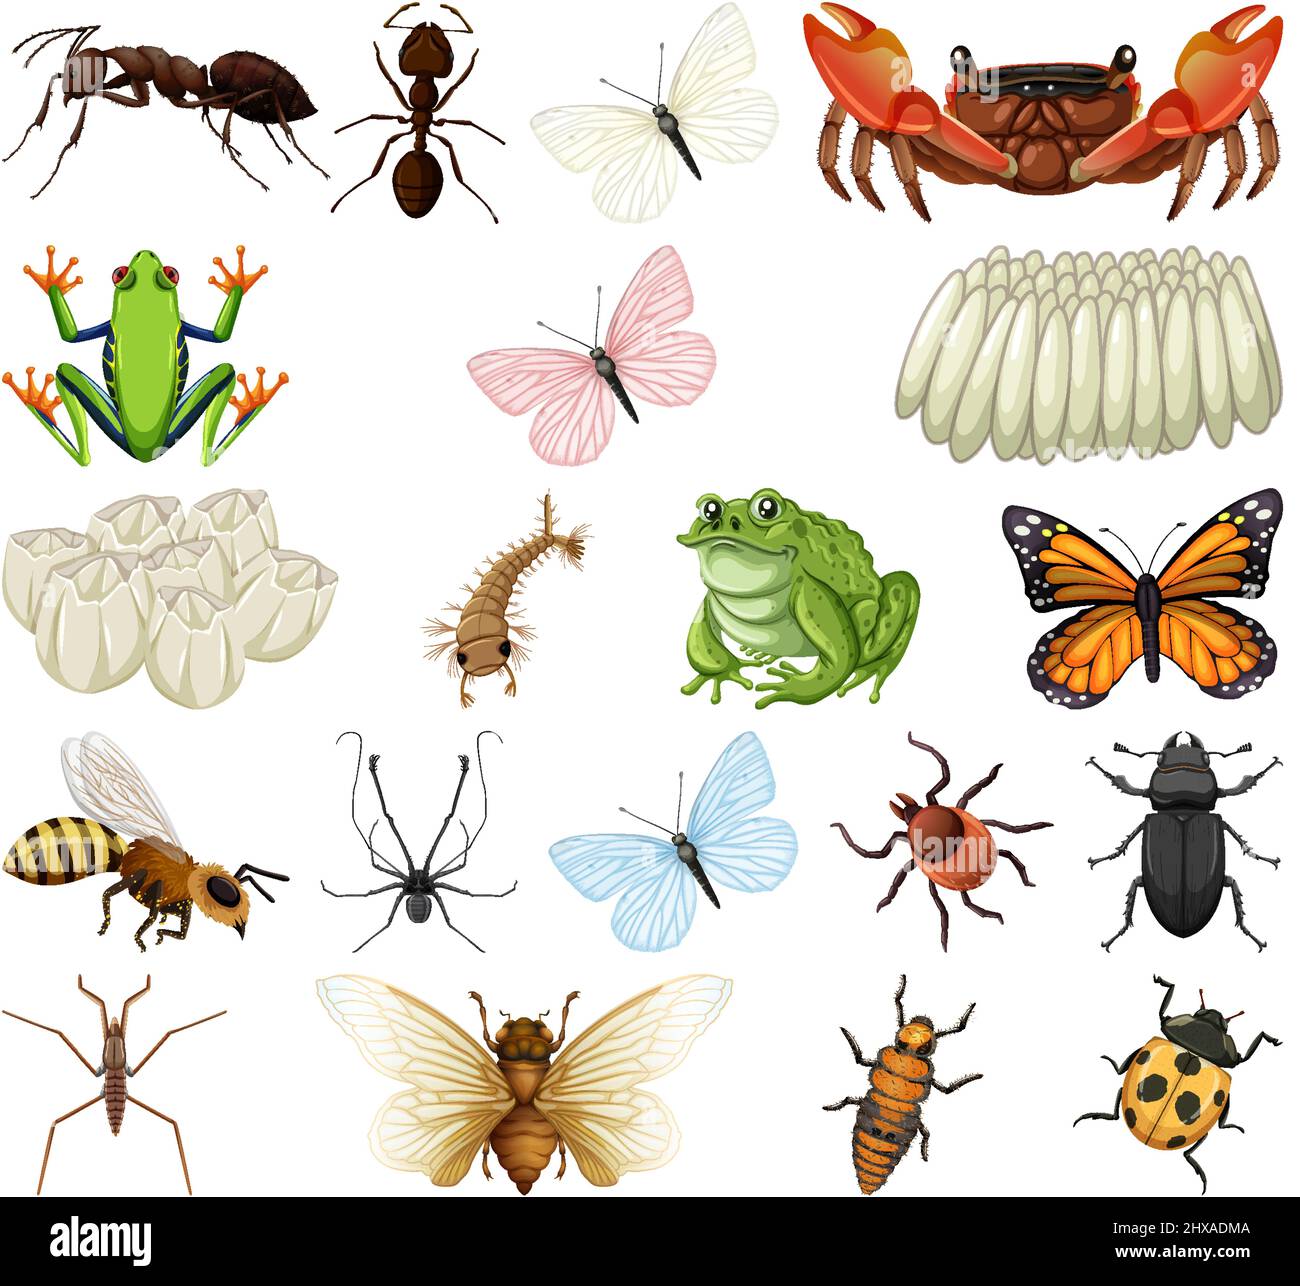 Verschiedene Arten von Insekten und Tieren auf weißem Hintergrund Illustration Stock Vektor